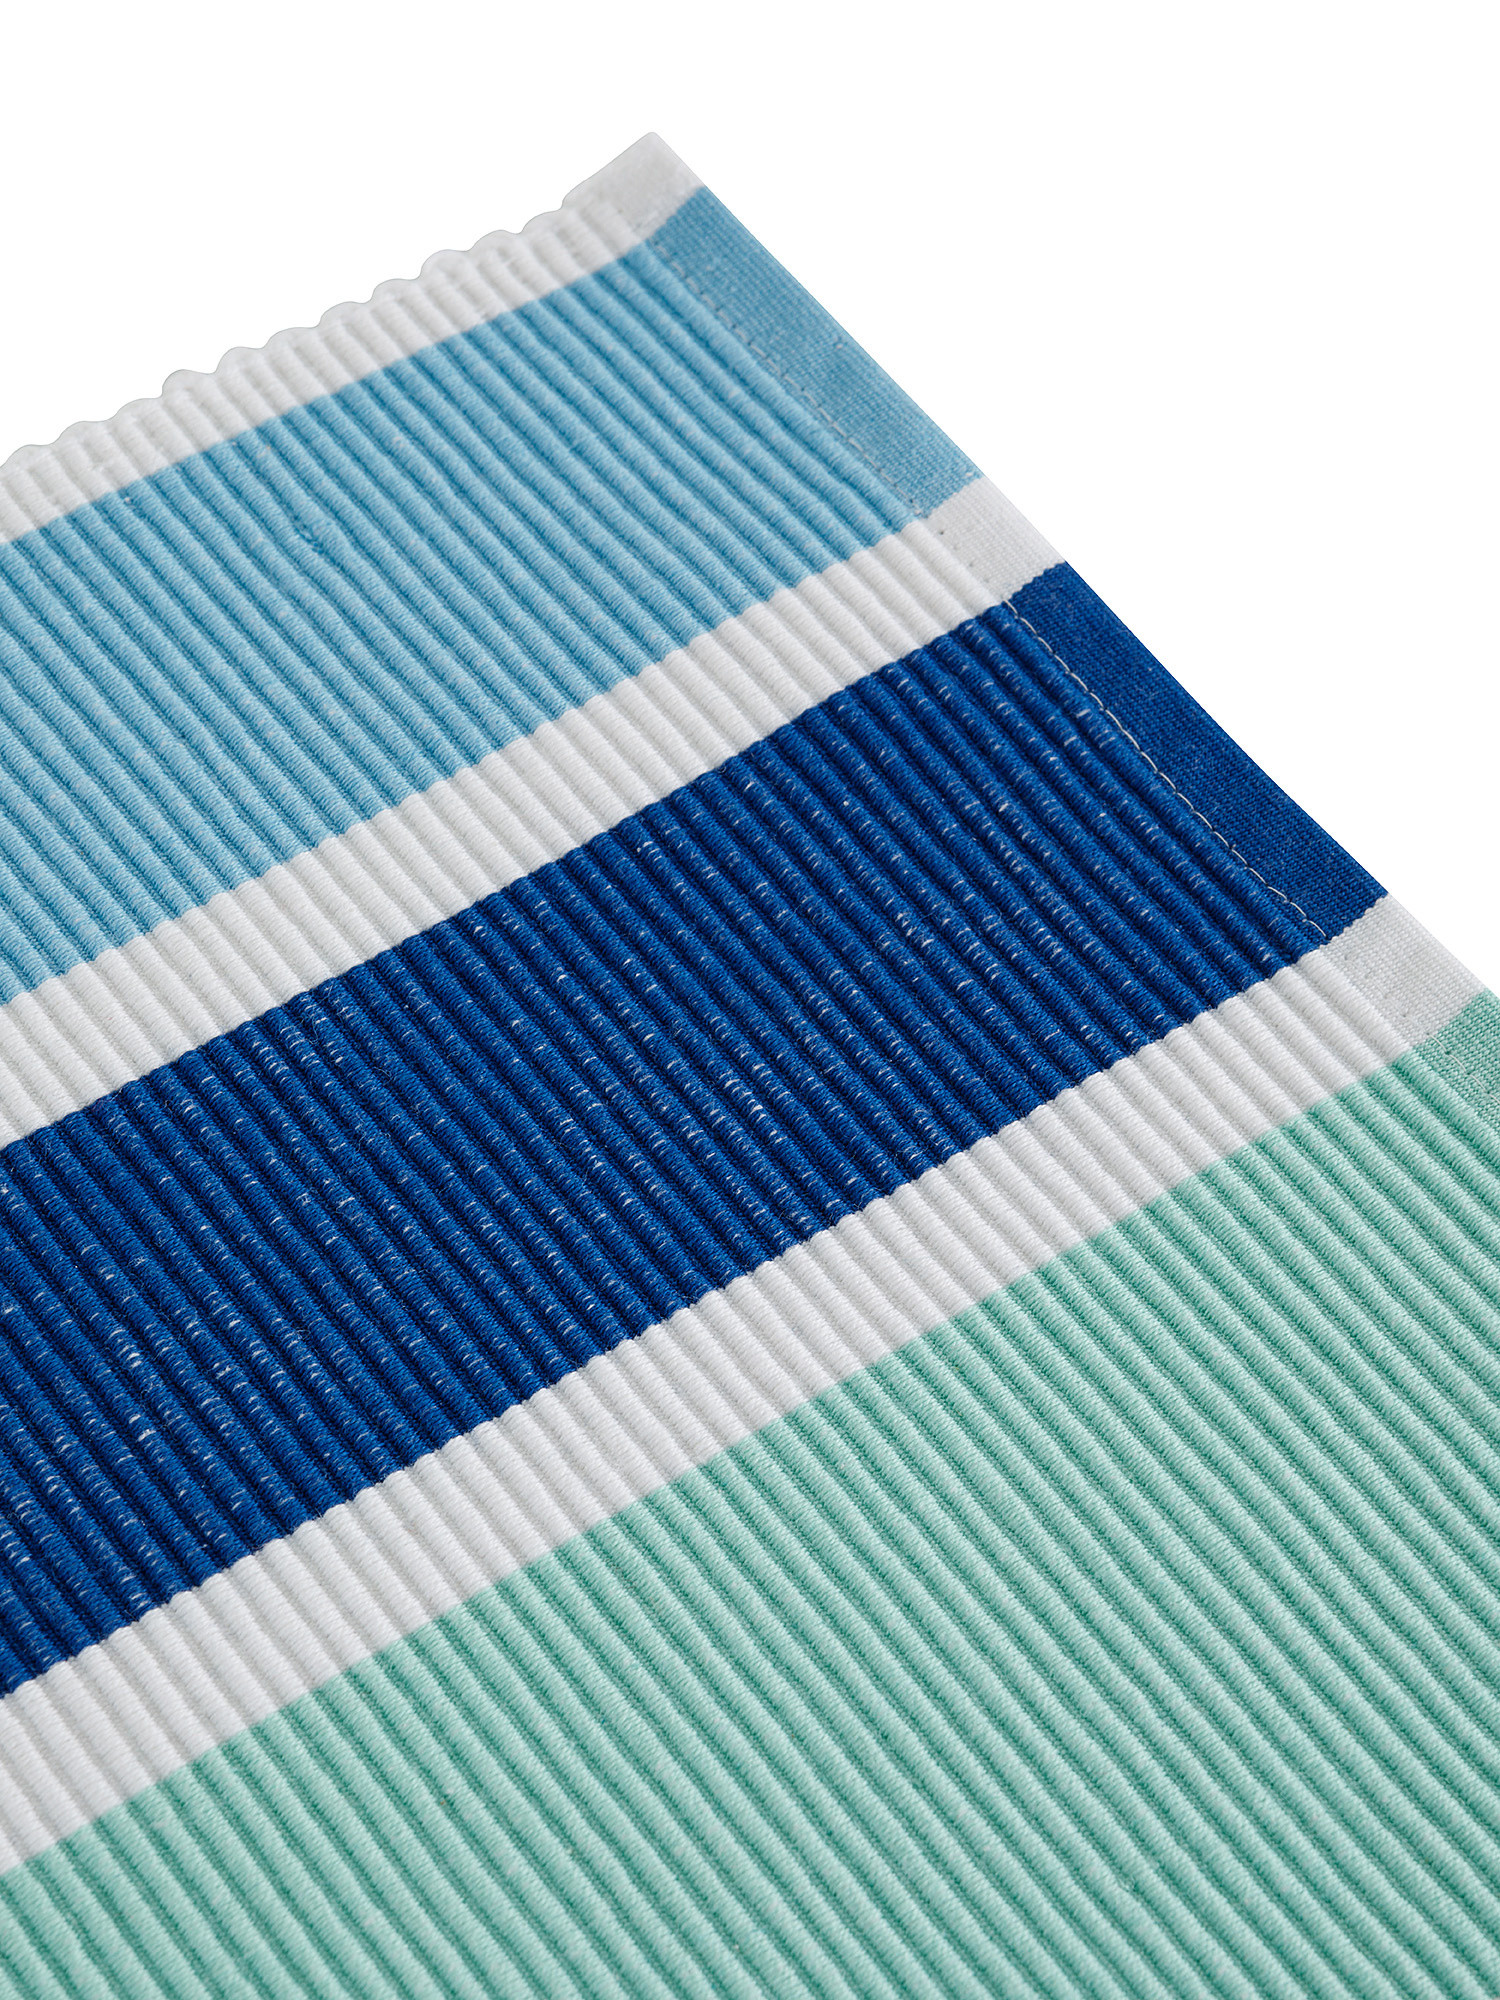 Tovaglietta cotone tinto filo a righe, Blu, large image number 1